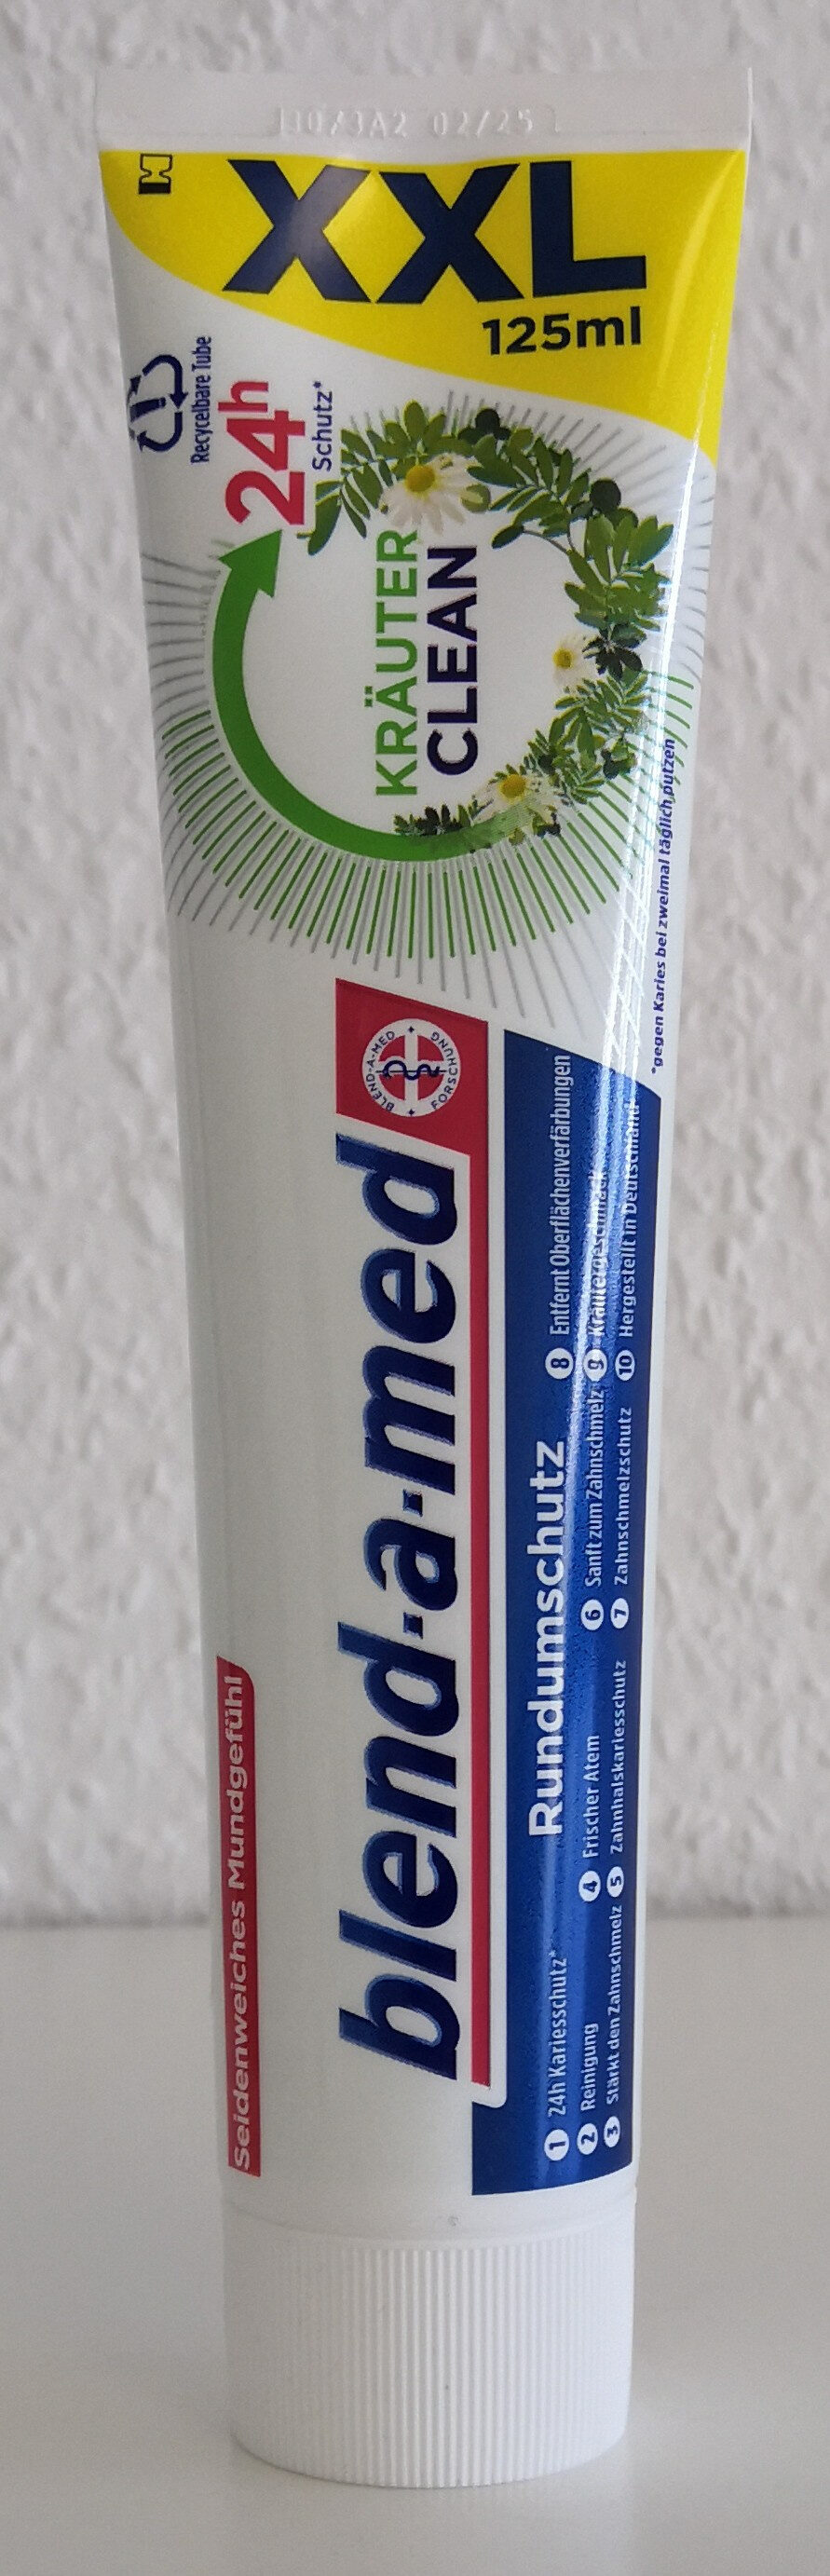 blend-a-med Kräuter clean - Produkt - de